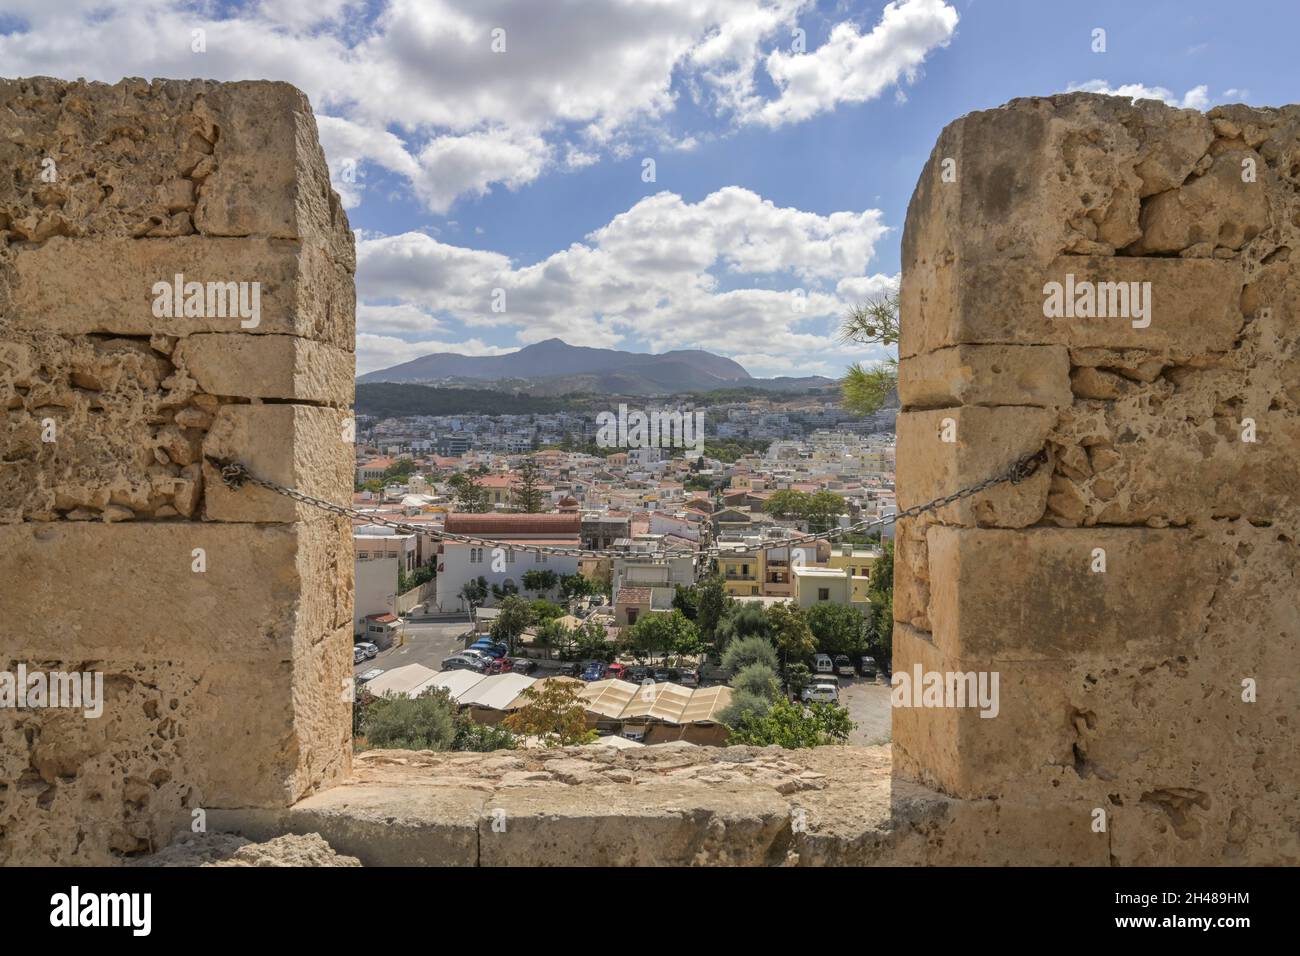 Festungsmauer, Fortezza, Rethymno, Kreta, Griechenland Stock Photo